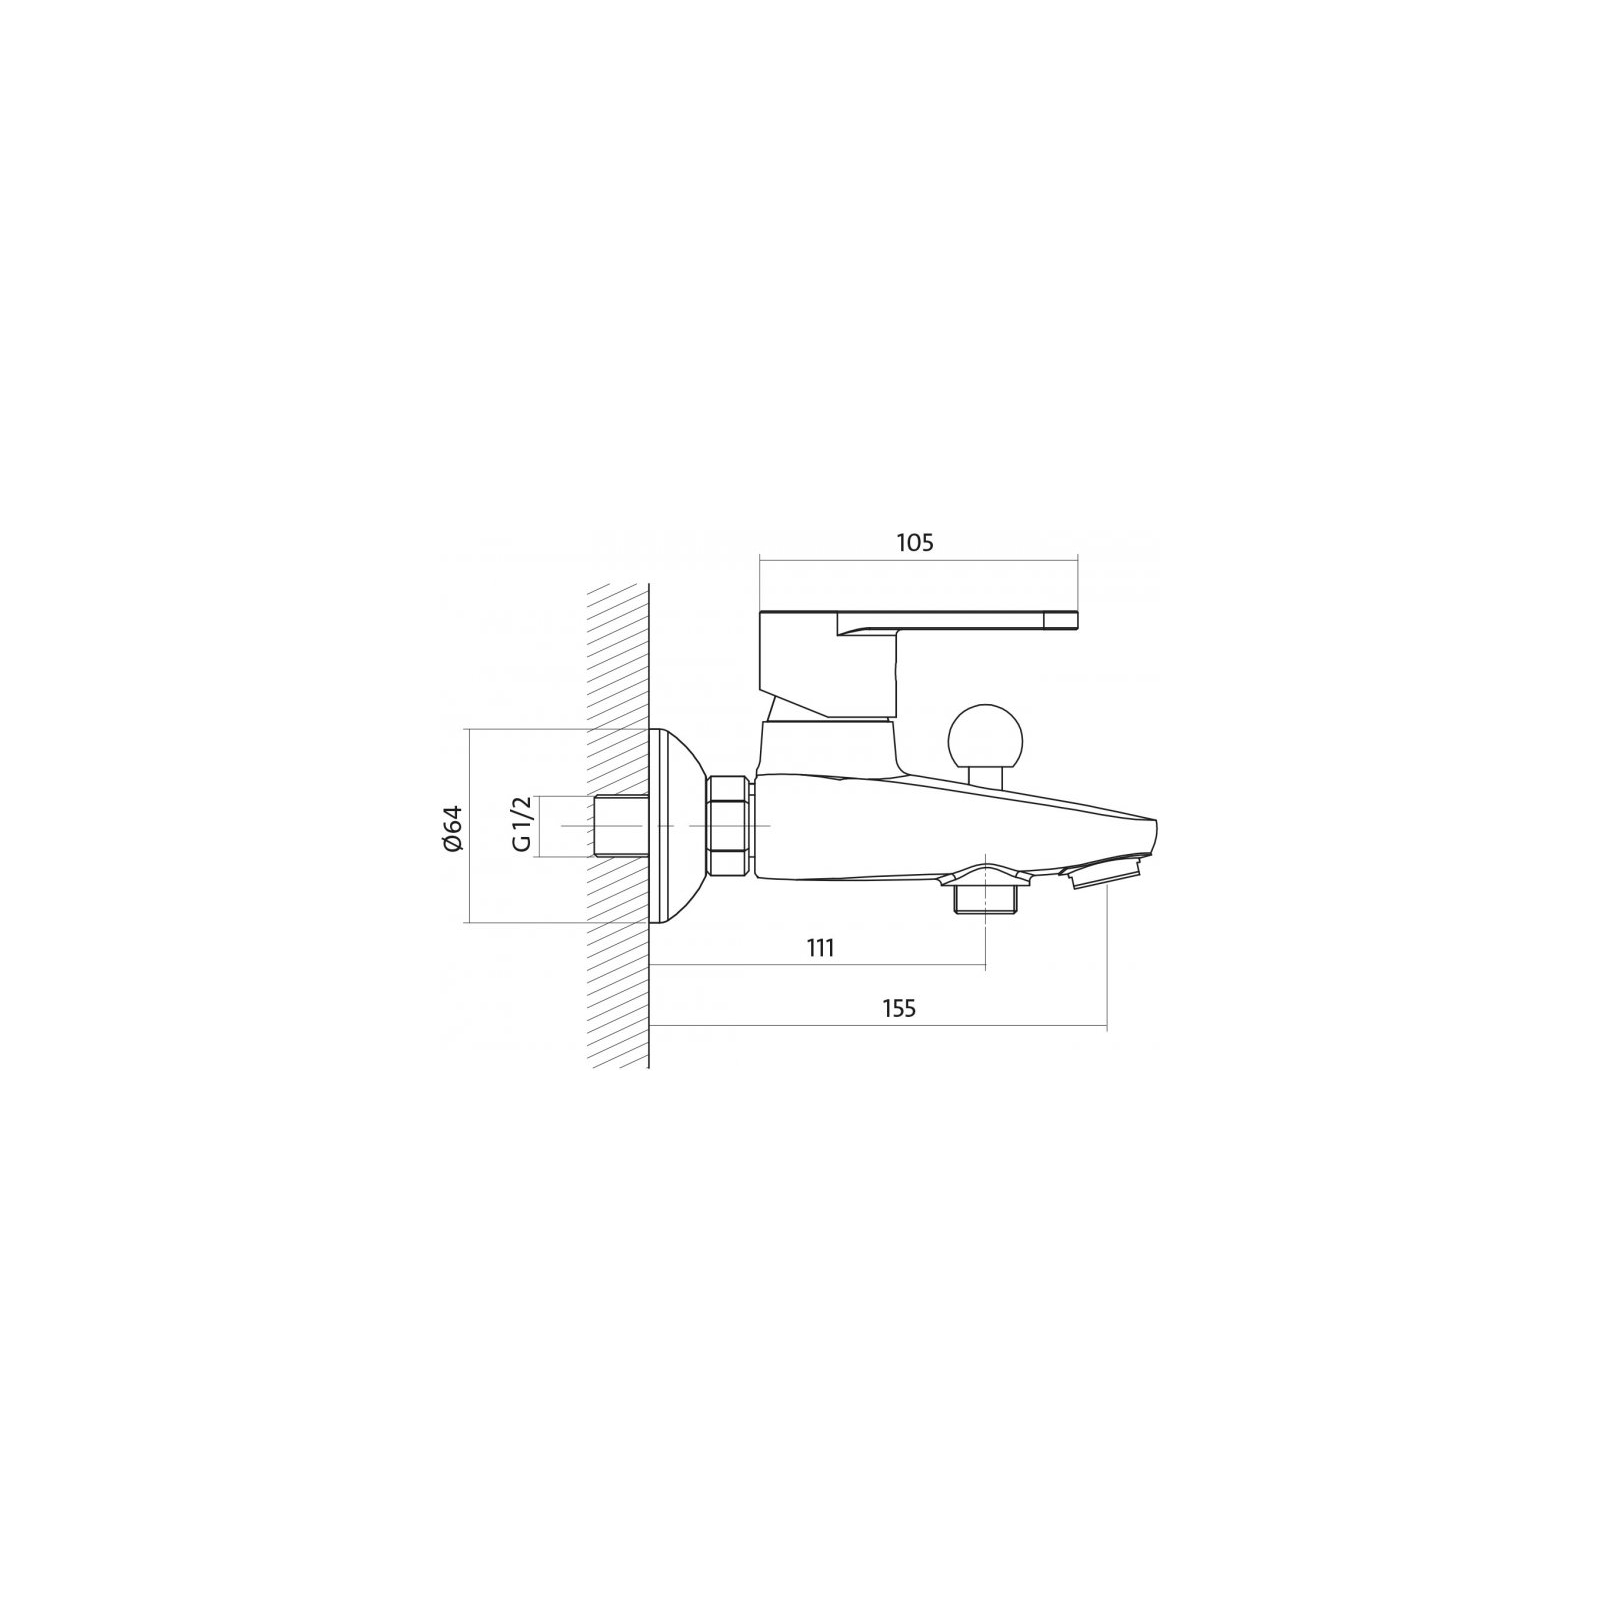 Змішувач Cersanit 3в1 B245 (S601-125) зображення 4